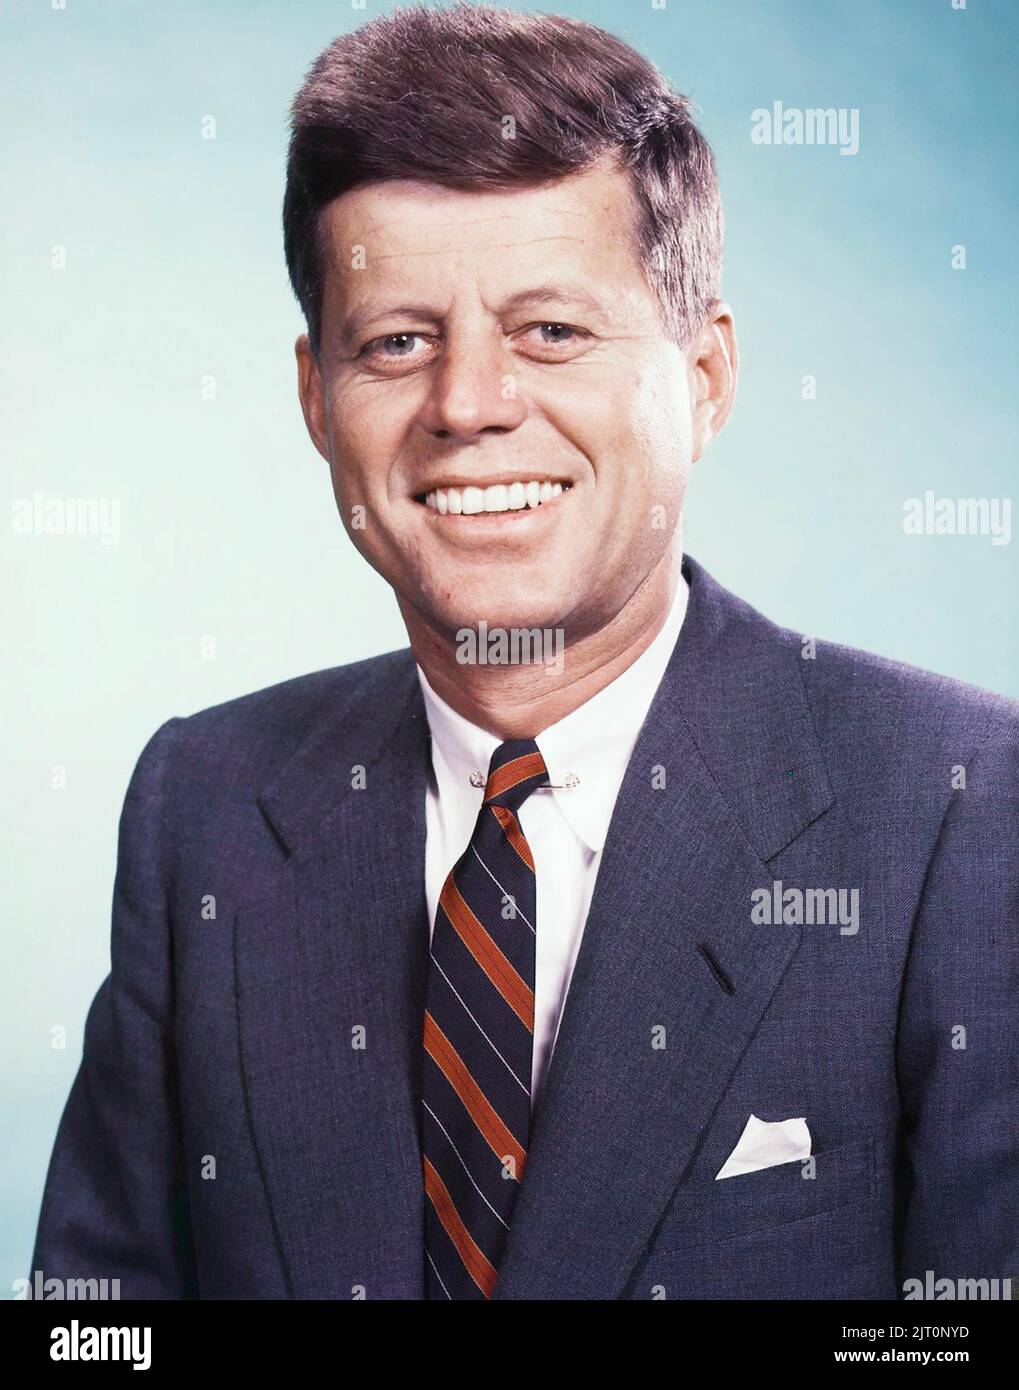 OHN F. KENNEDY (1917-1963) como Presidente de los Estados Unidos en 1963 Foto de stock